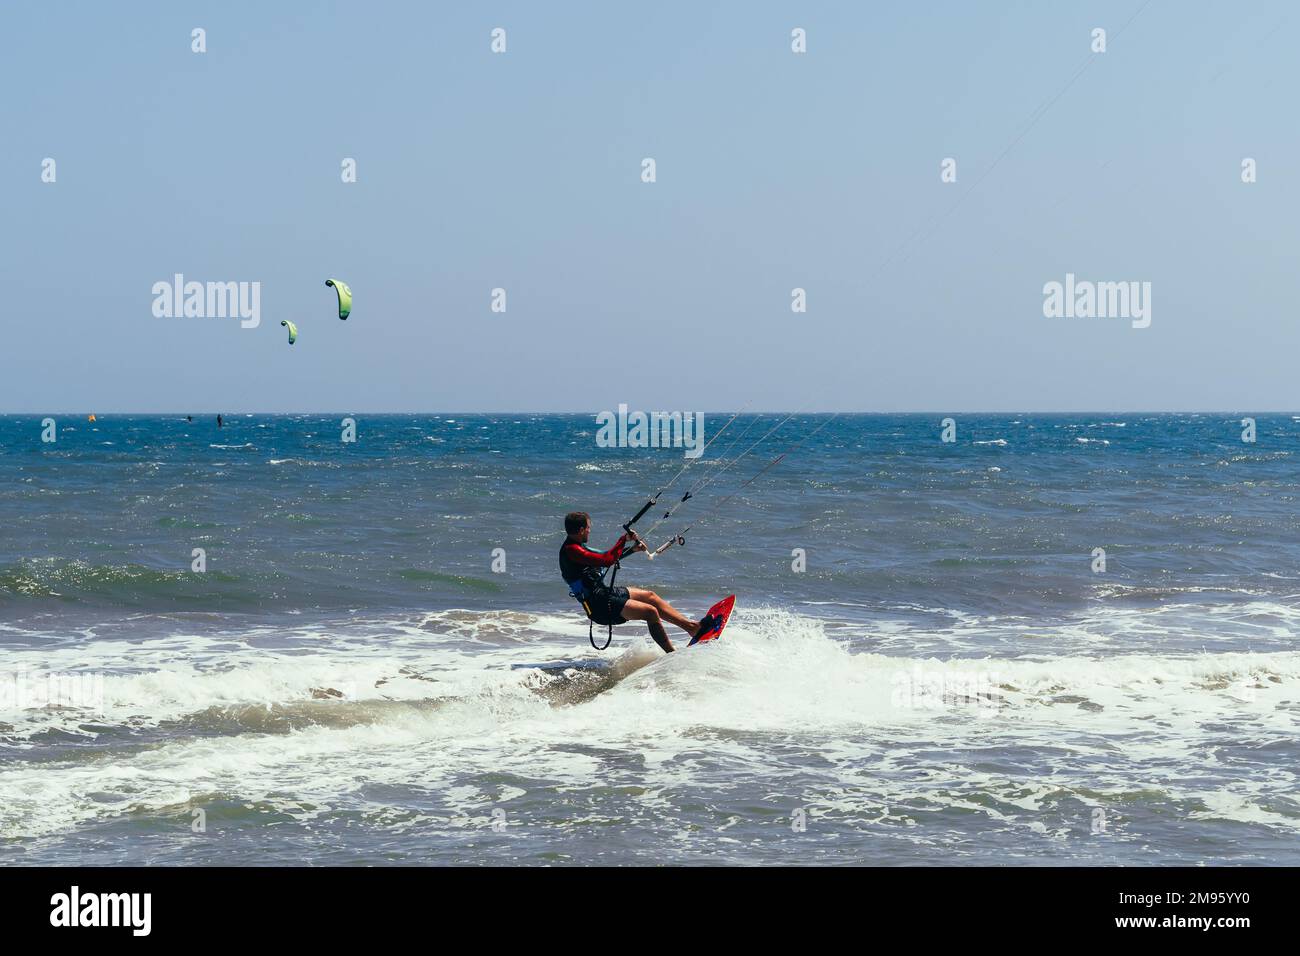 MUI NE, VIETNAM - 4 MARZO 2017: Il kitesurfer maschile si muove sul bordo sulle onde del mare Foto Stock